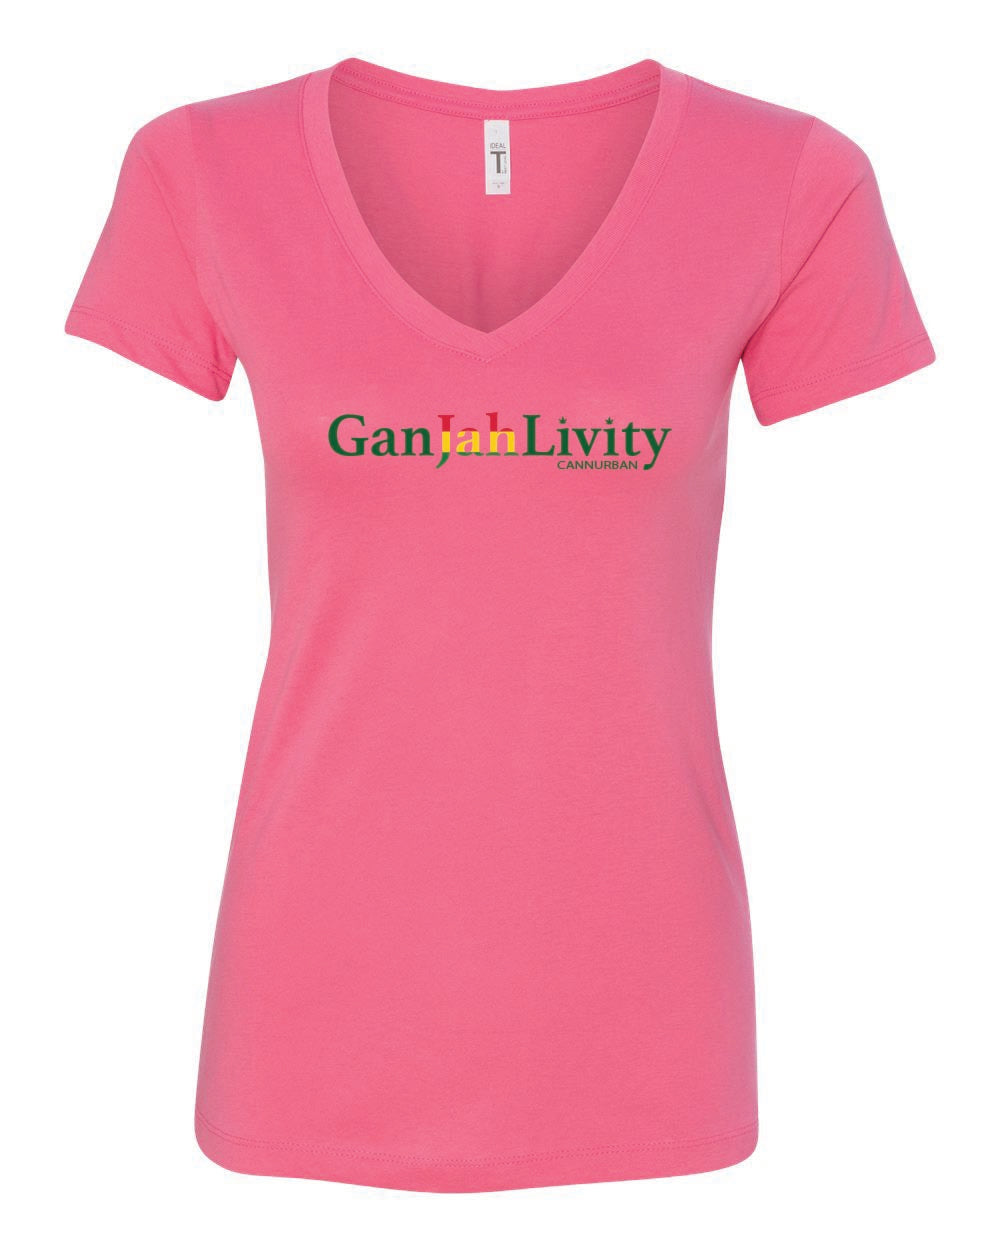 Cannurban GanJahLivity Logo T-shirt - Pink